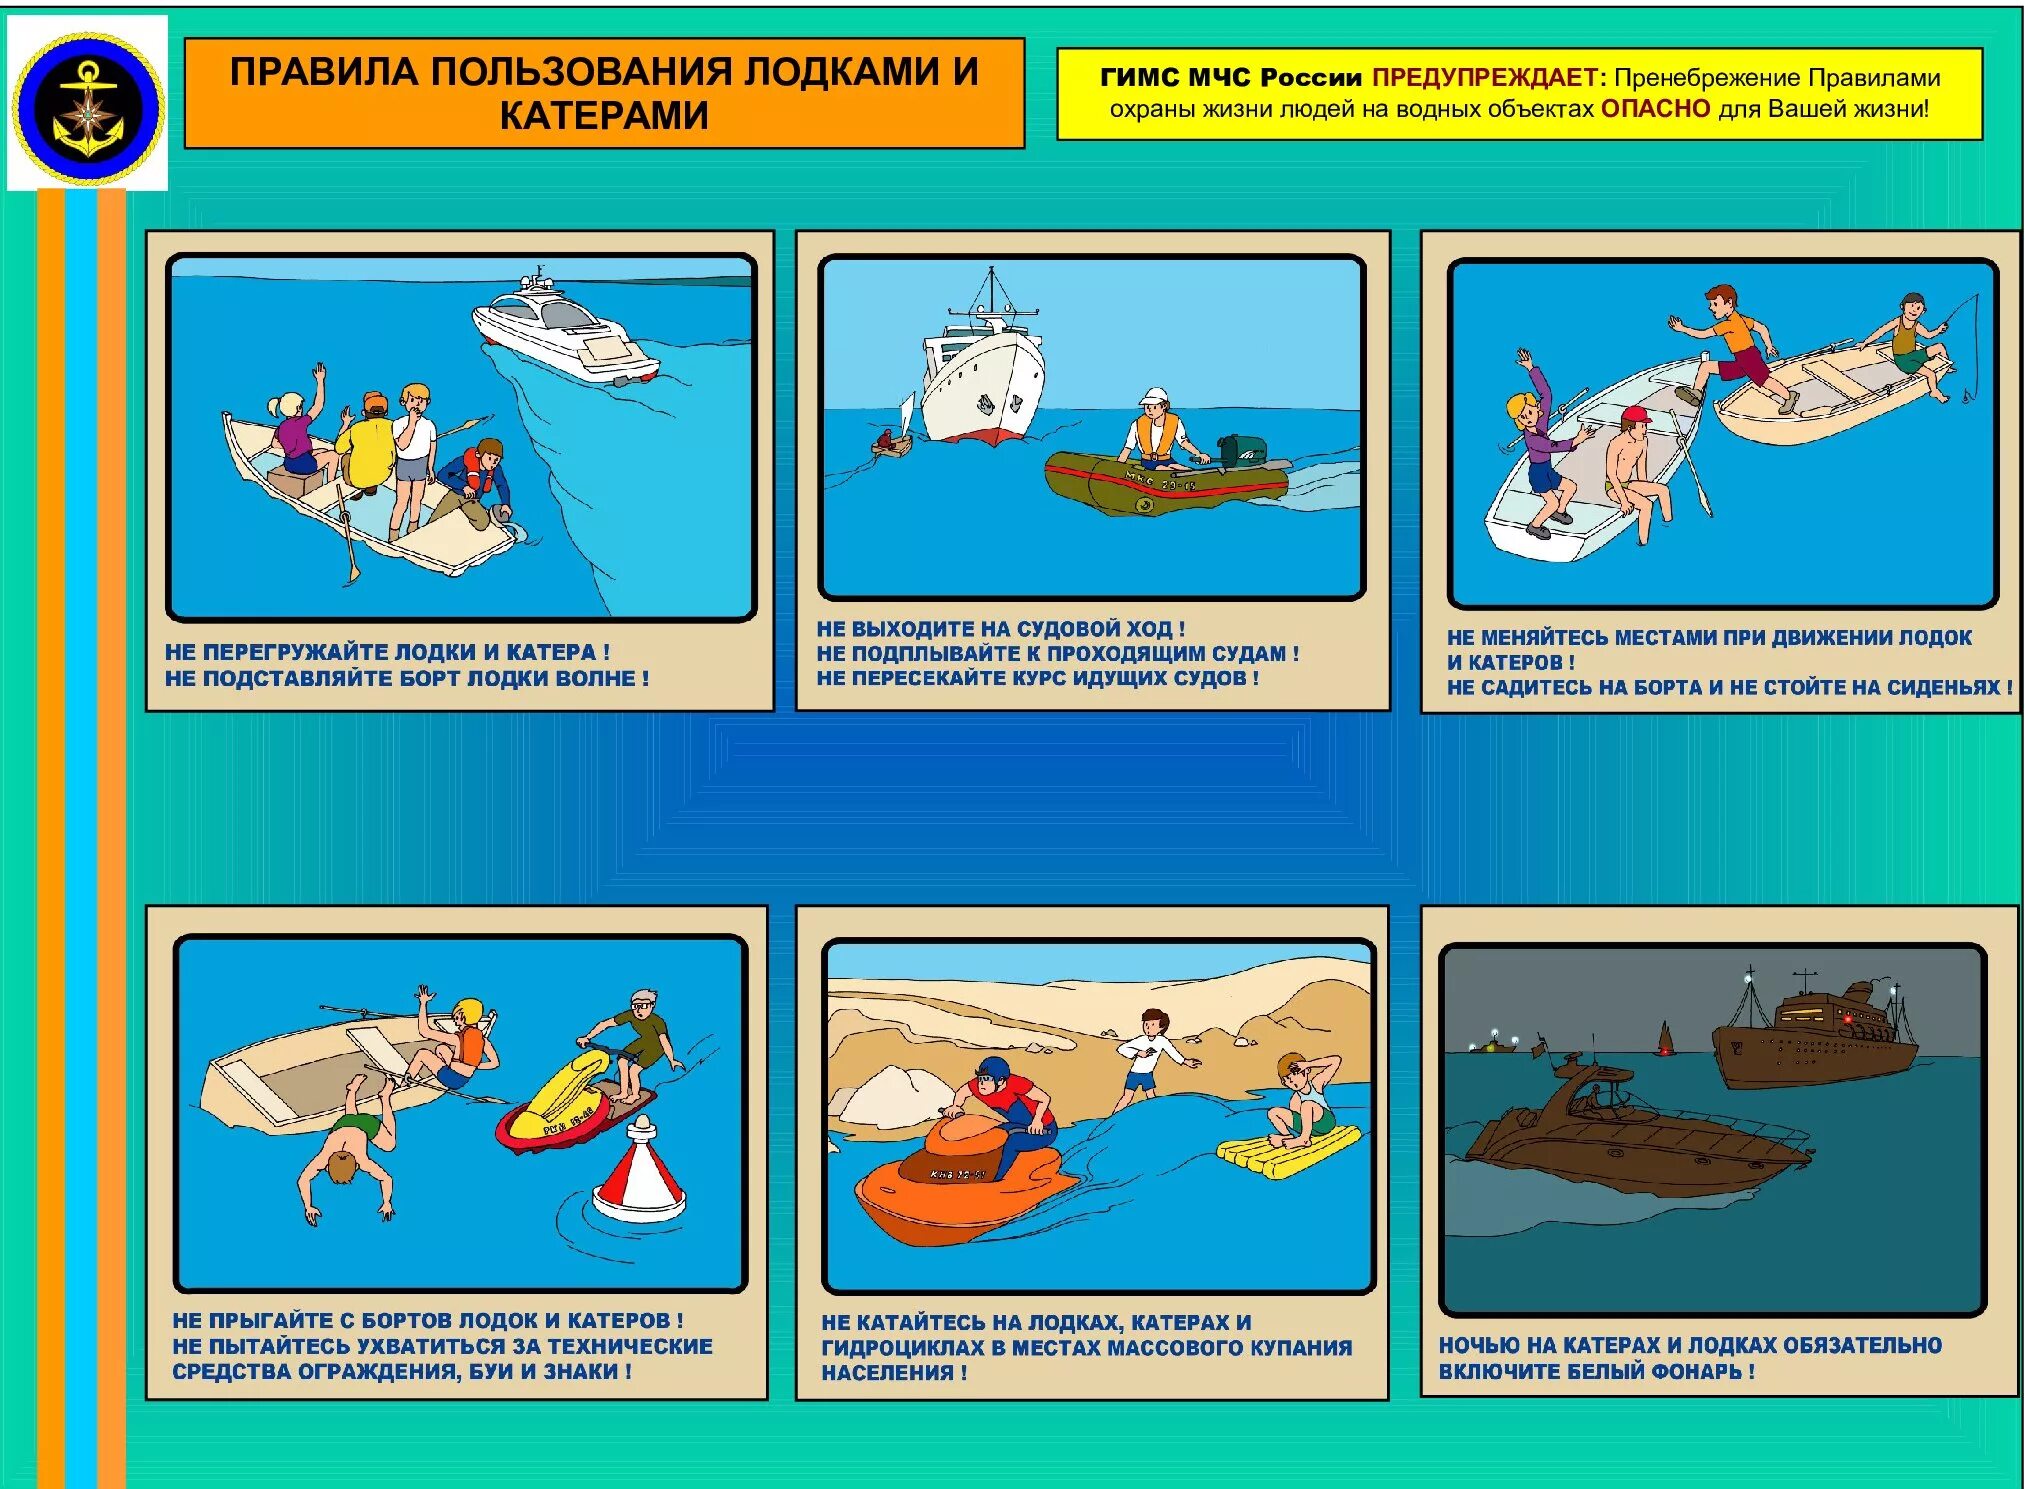 Безопасность на водном транспорте. Правила пользования лодками и катерами. Безопасность на маломерных судах. Требования безопасности на водном транспорте.